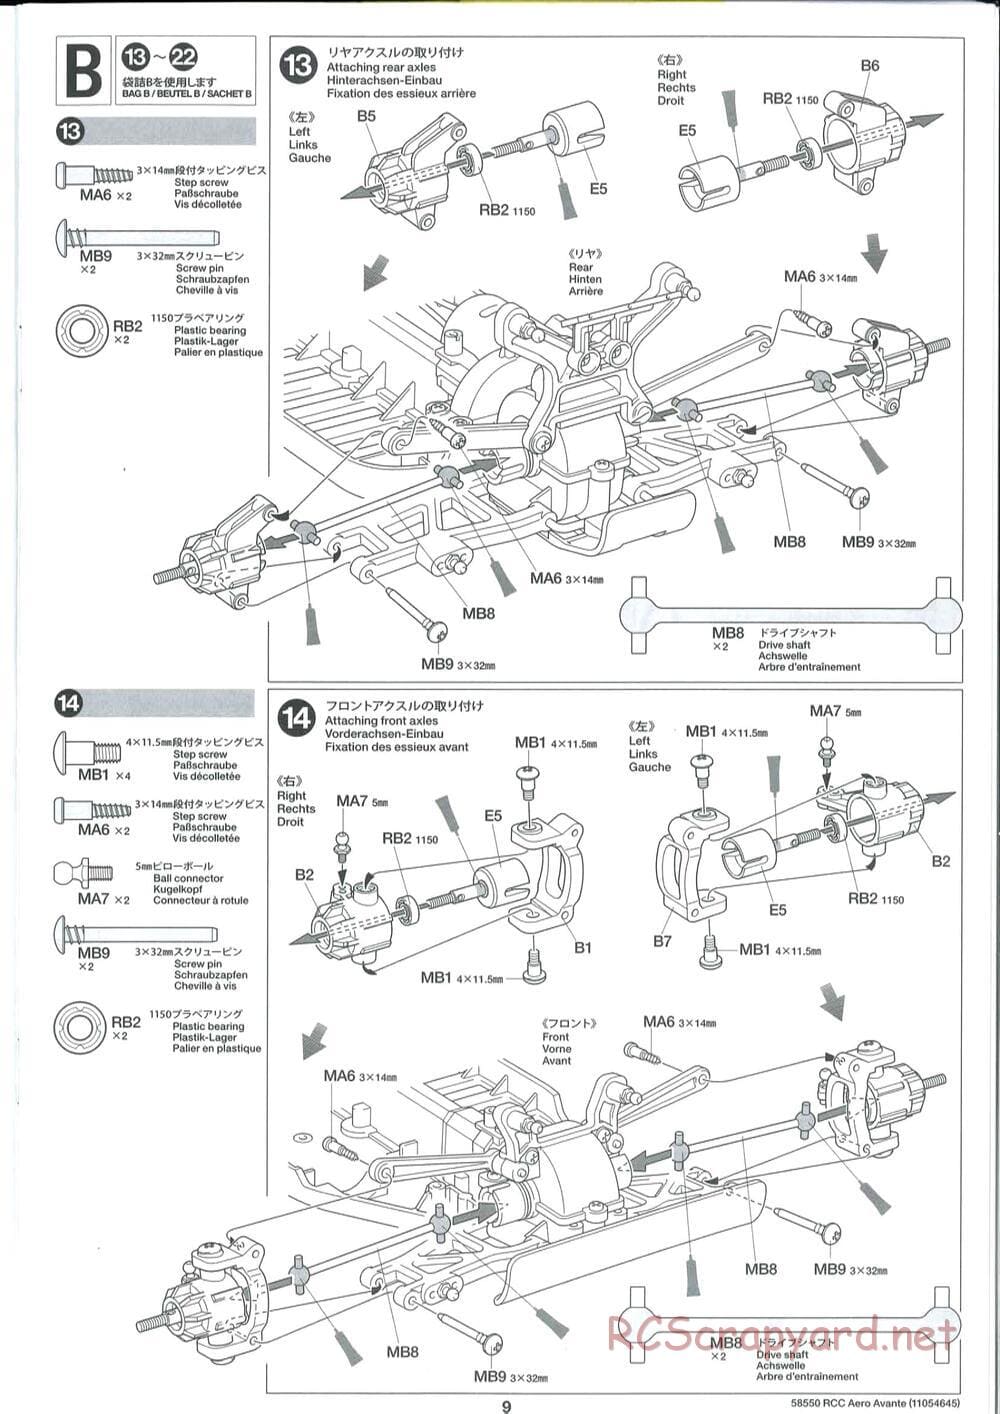 Tamiya - Aero Avante Chassis - Manual - Page 9